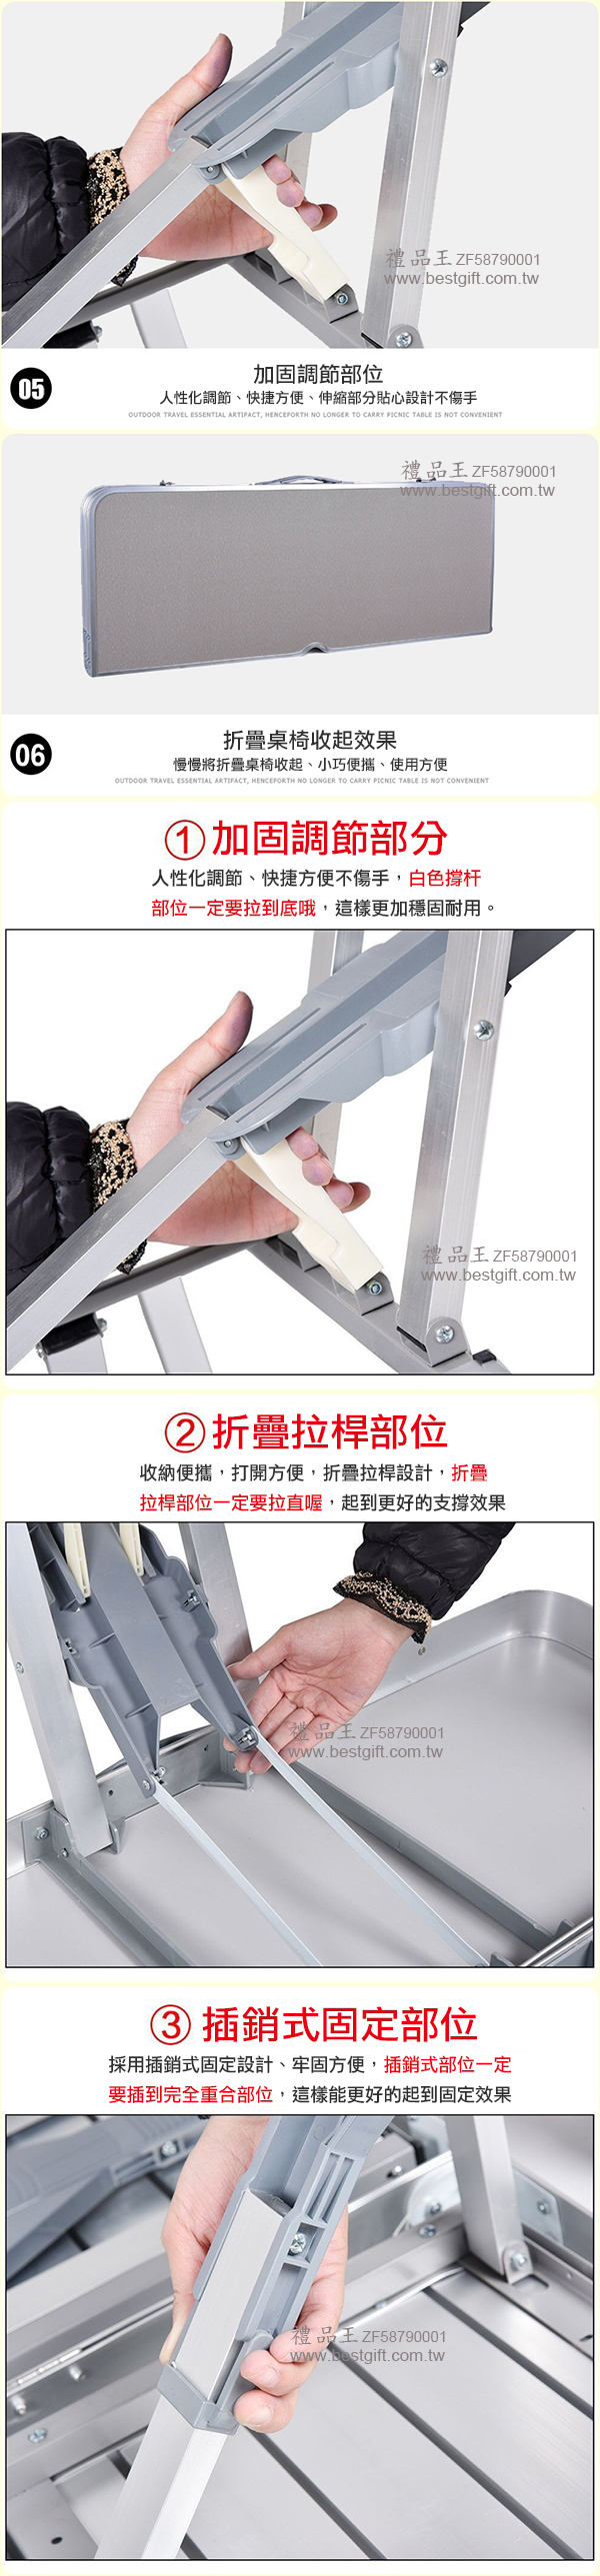 鋁合金折疊桌椅   商品貨號： ZF58790001